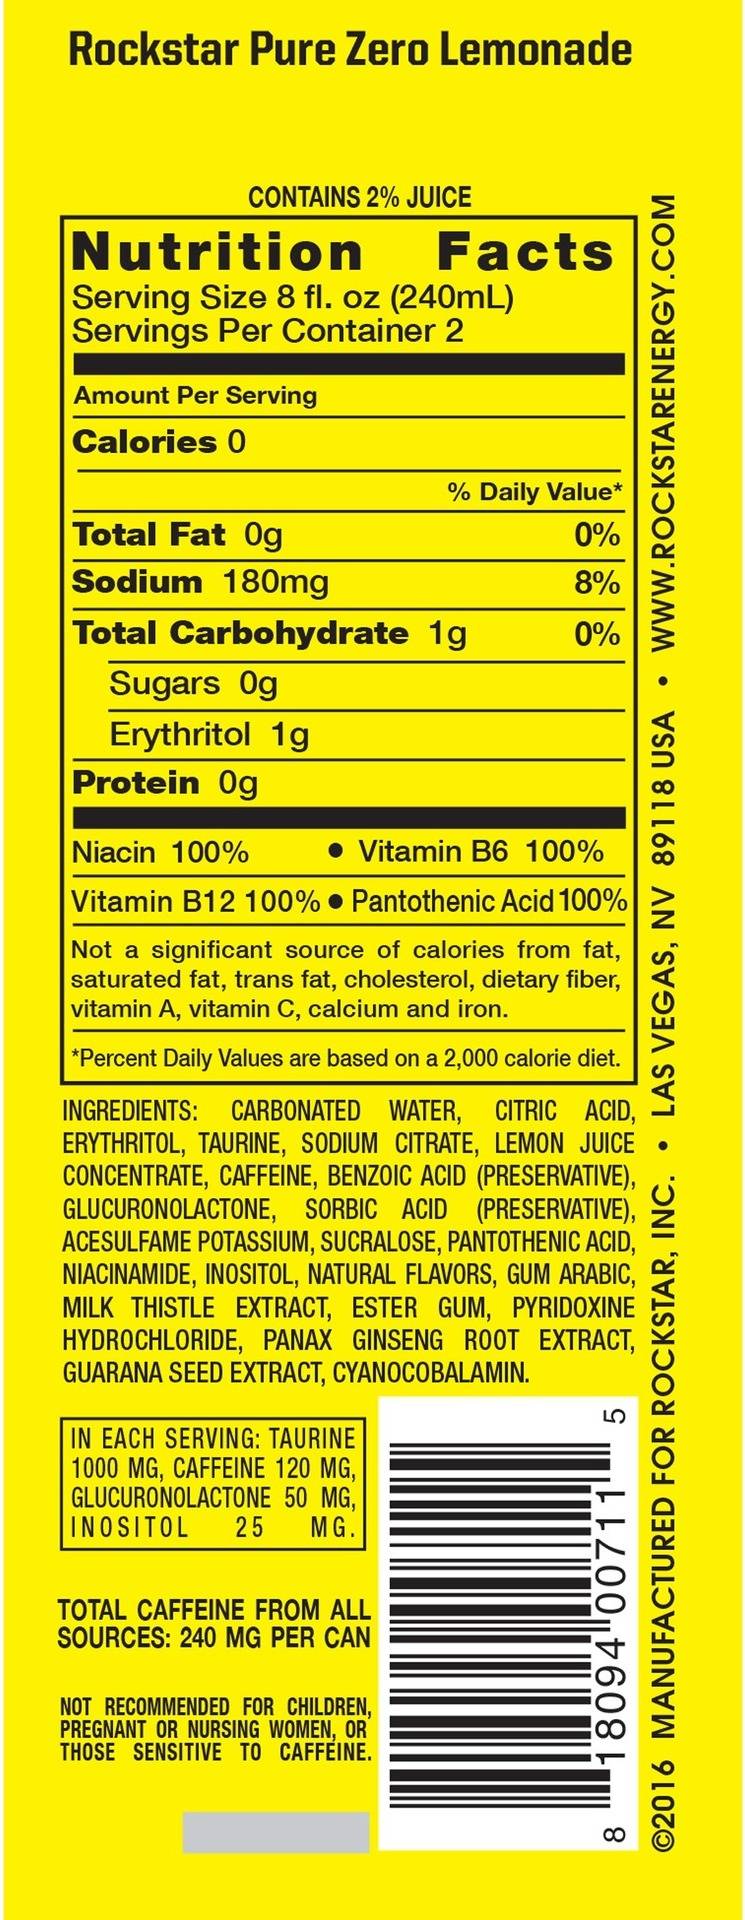 Image describing nutrition information for product Rockstar Pure Zero Lemonade